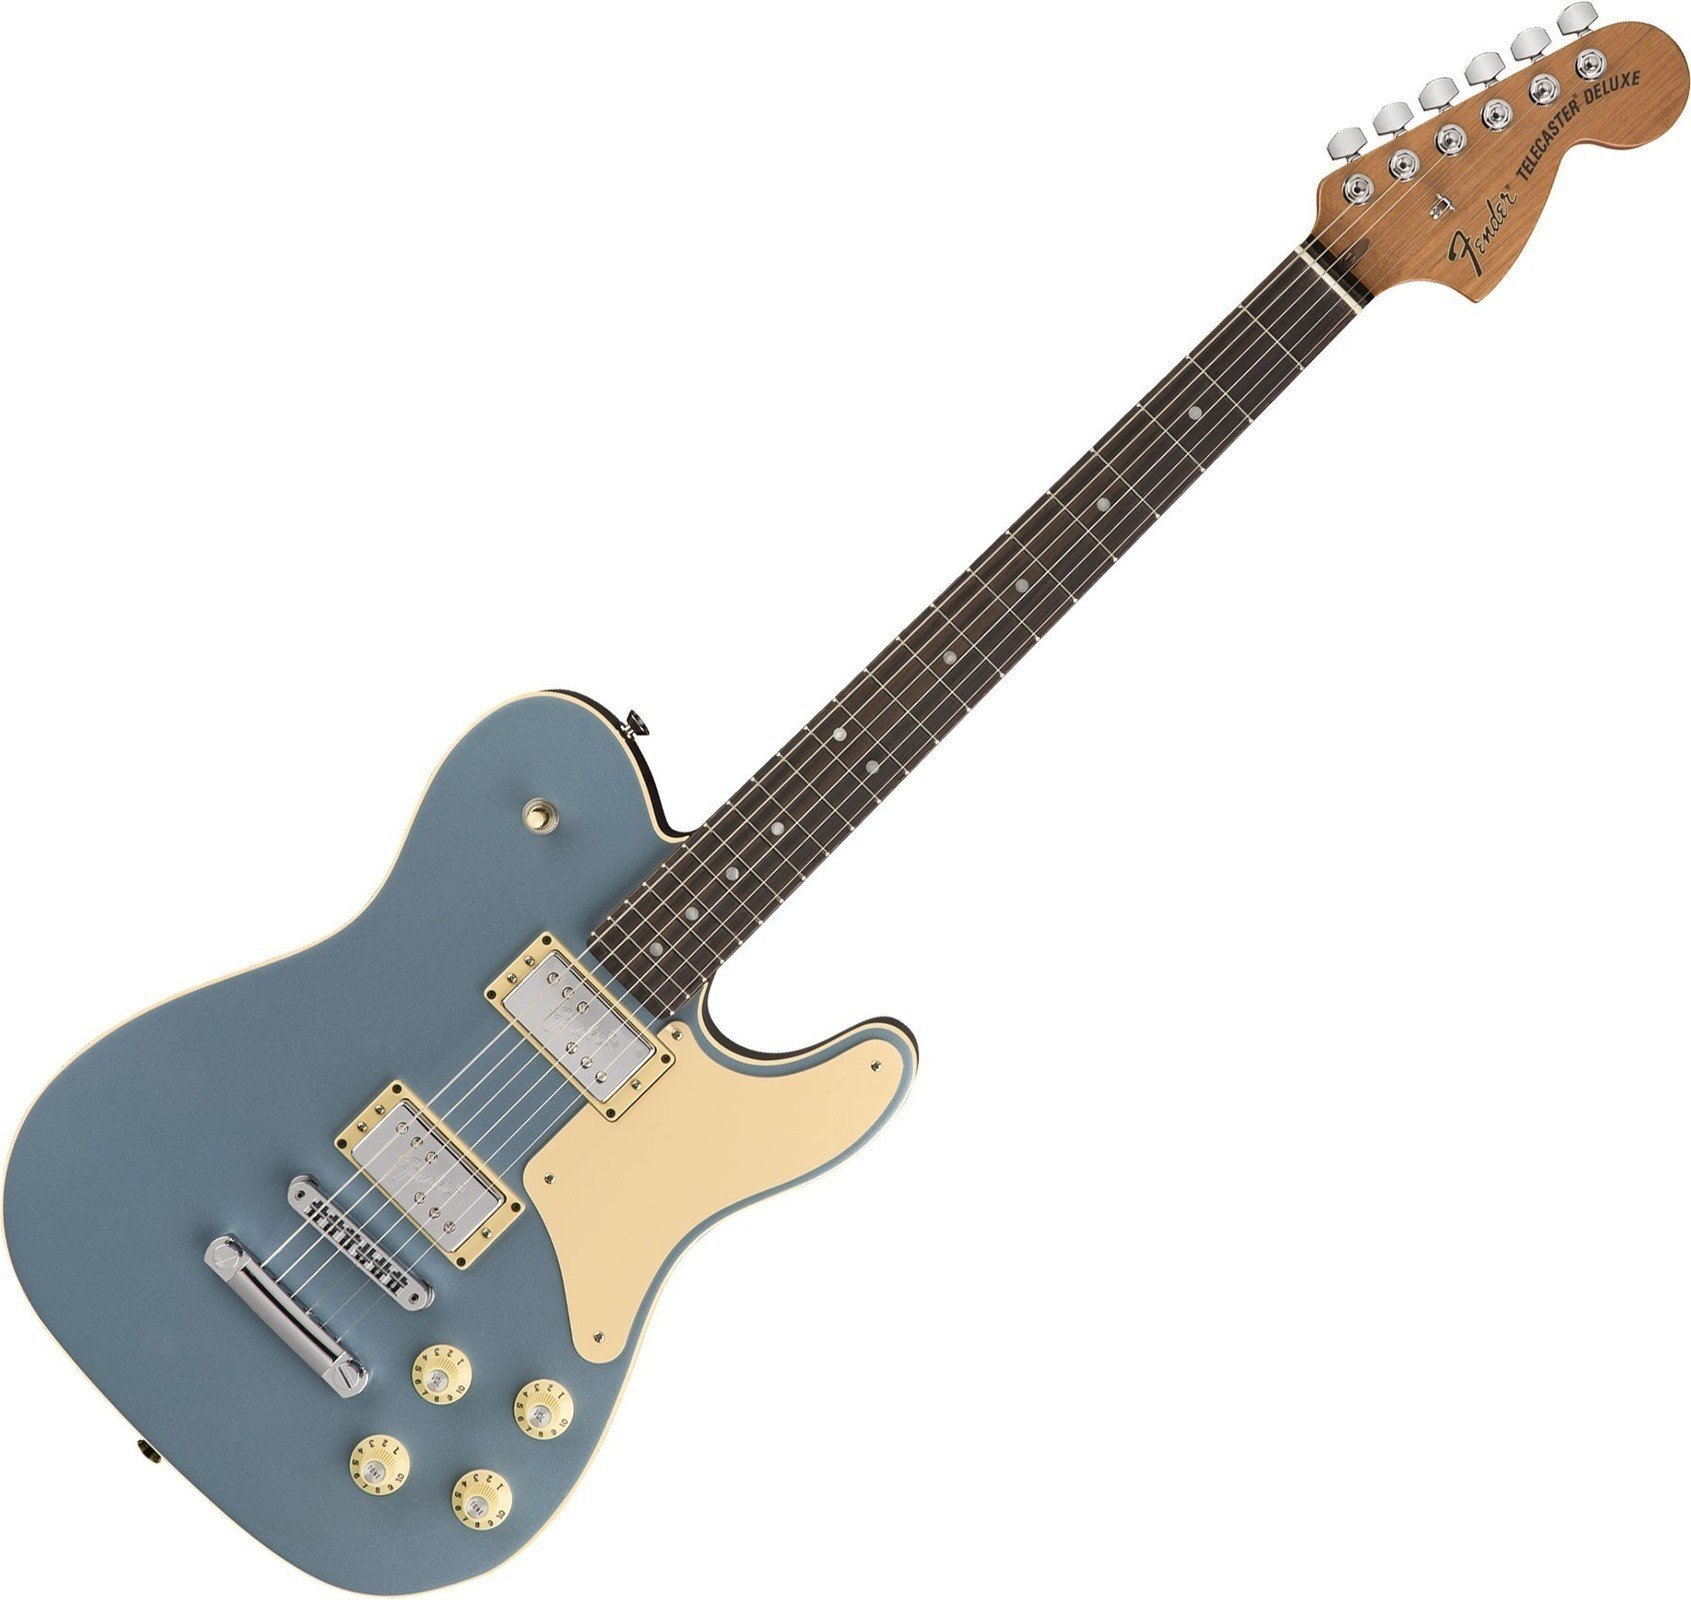 Sähkökitara Fender Limited Troublemaker Telecaster Deluxe RW Ice Blue Metallic